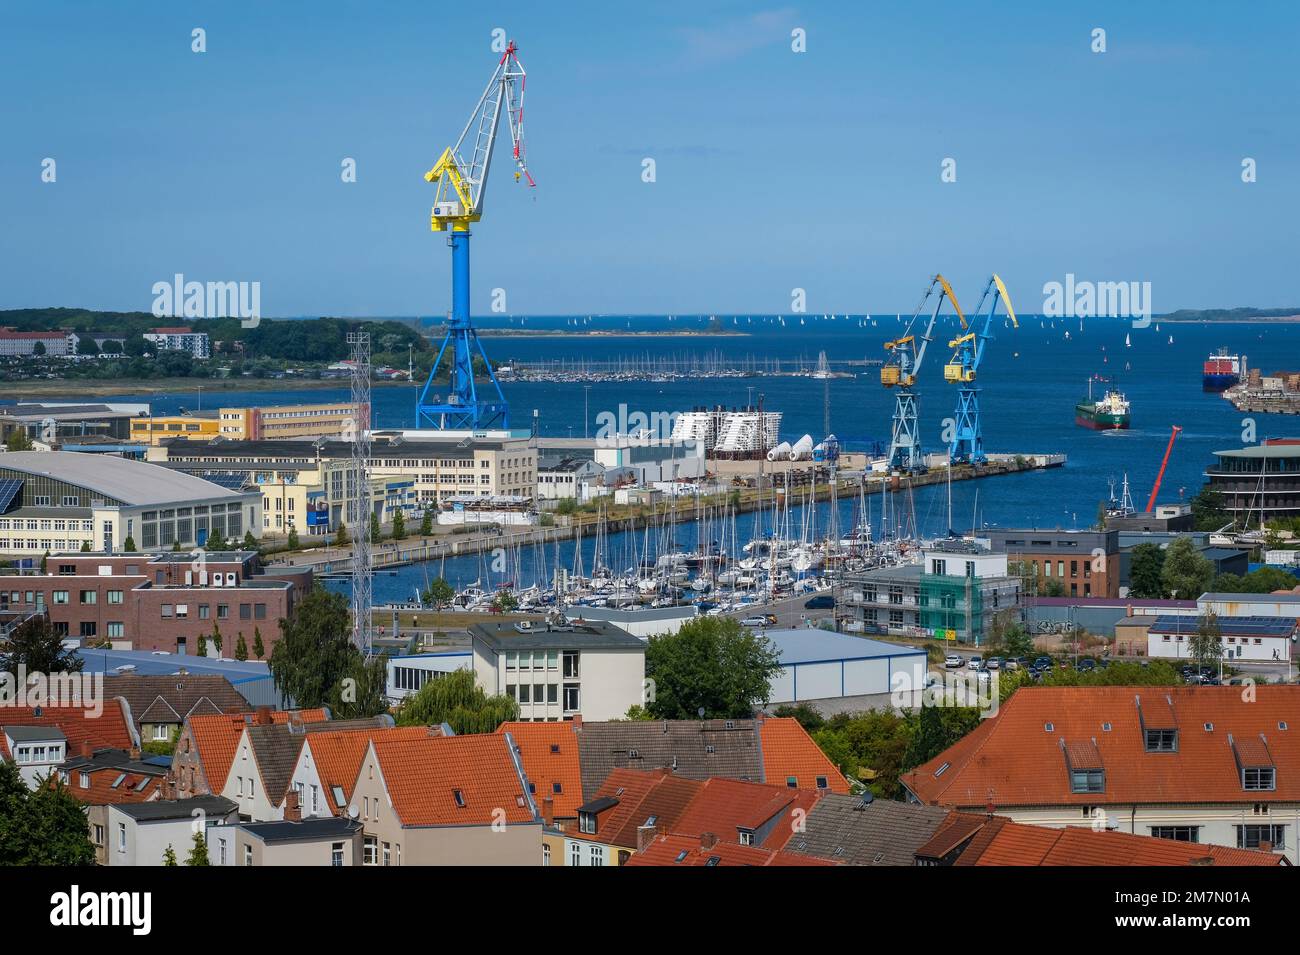 Wismar, city view, old town, port, MV shipyards Wismar, Mecklenburg-Western Pomerania, Germany Stock Photo